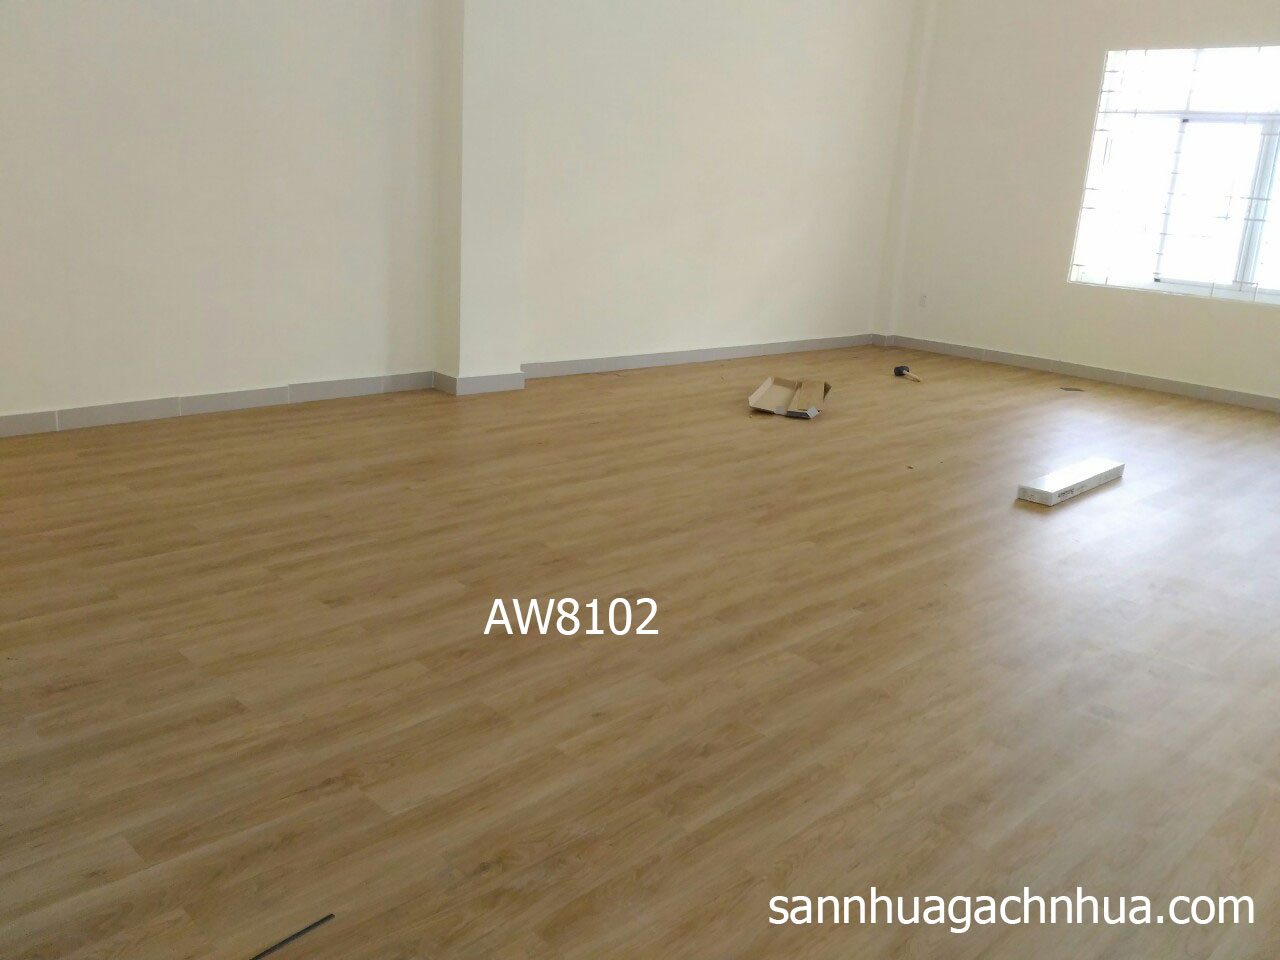 Sử dụng sàn nhựa giả gỗ AW8102 cho công trình trường tiểu học Điện Biên